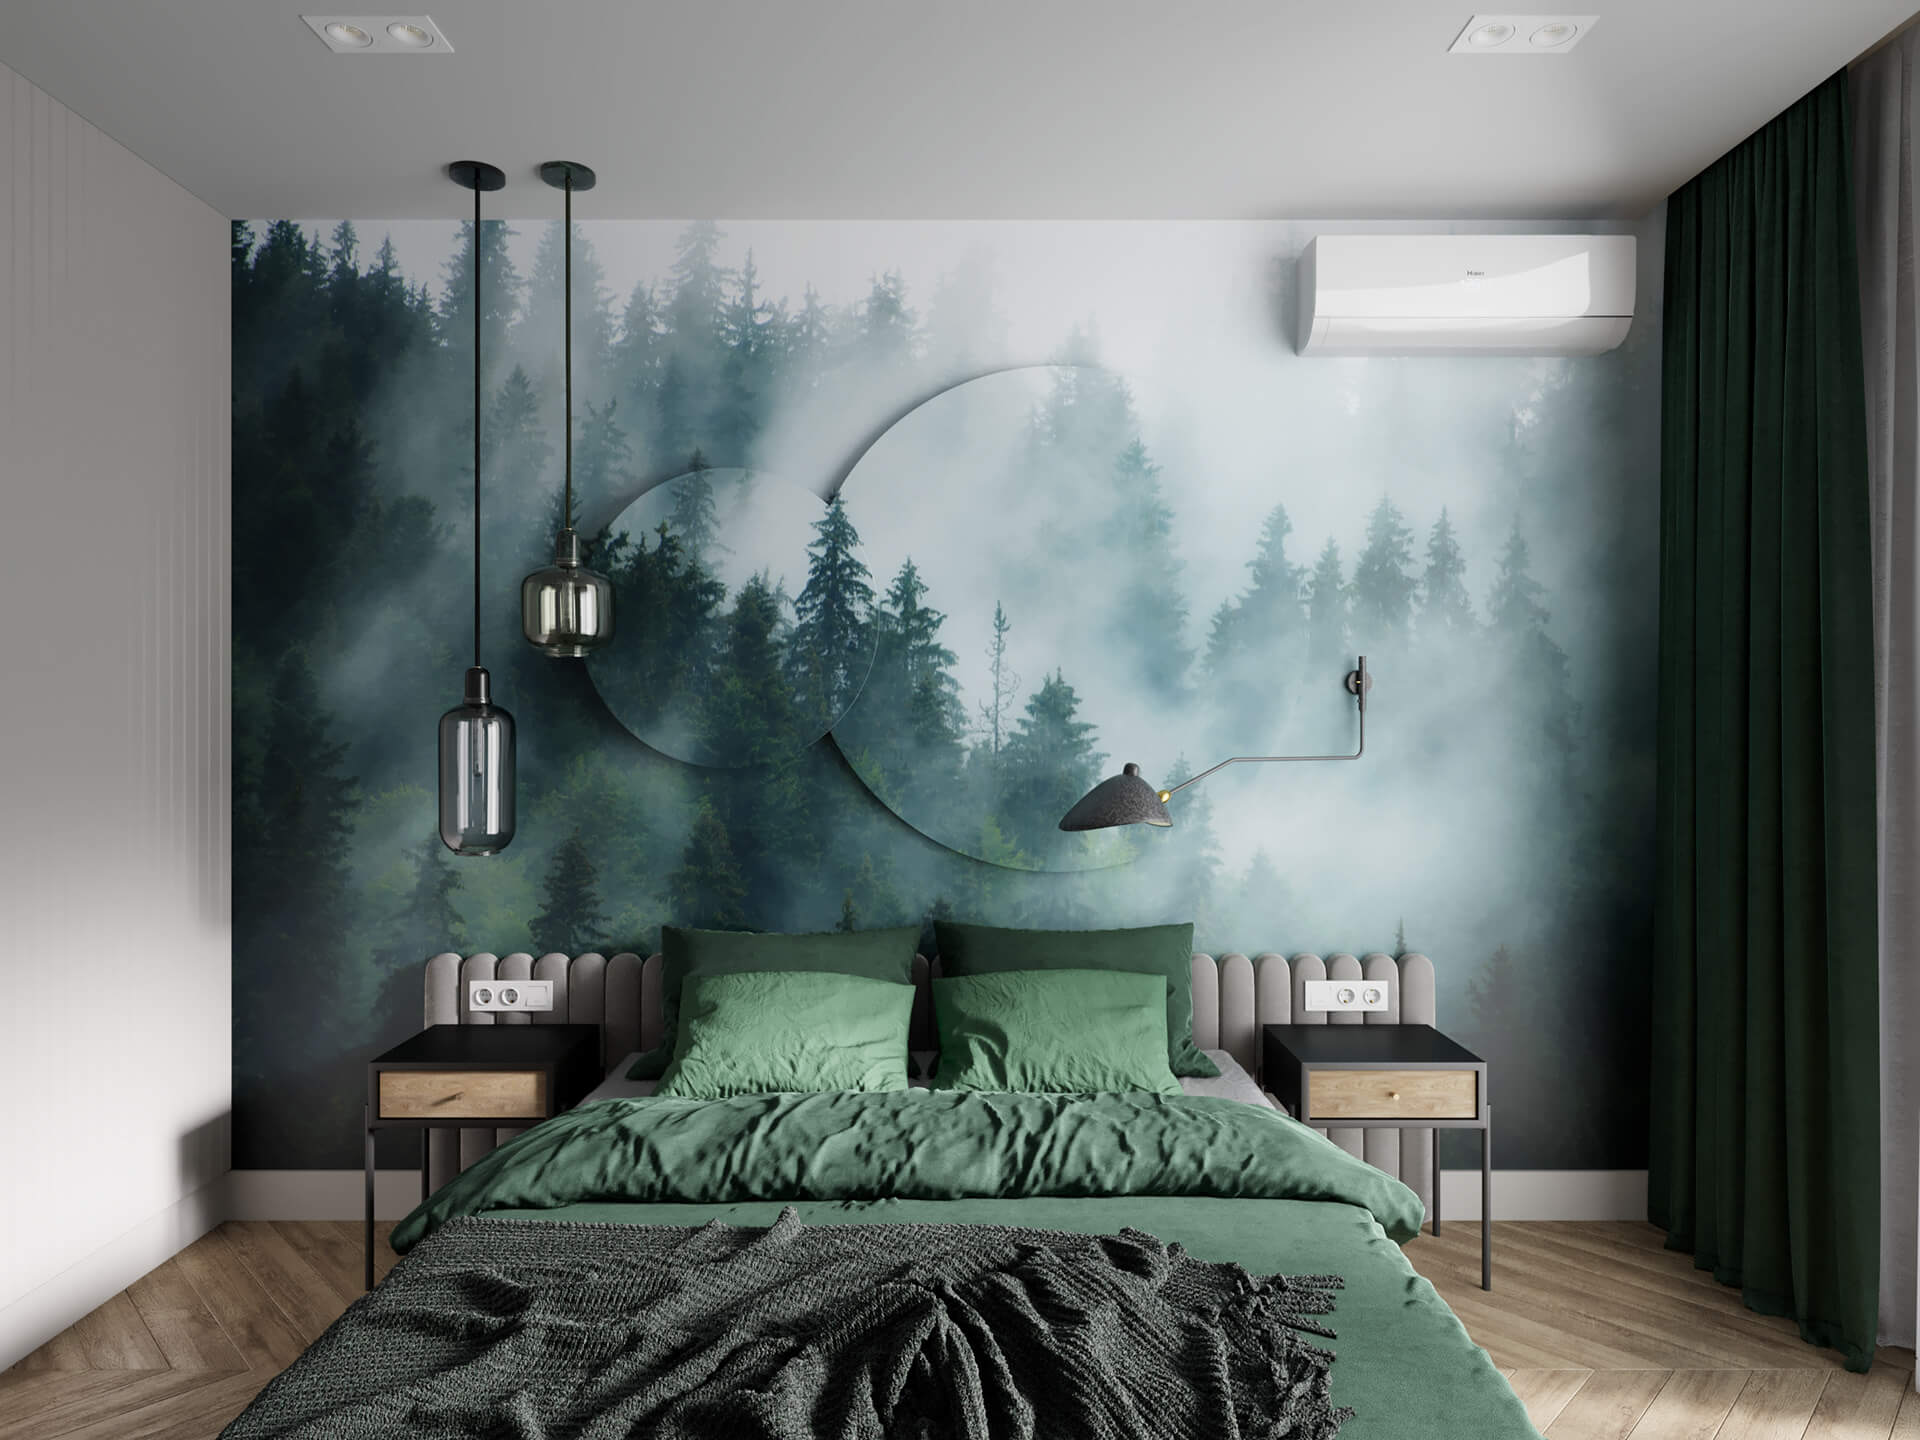 Mẫu phòng ngủ màu xanh lá cây đẹp dễ ứng dụng